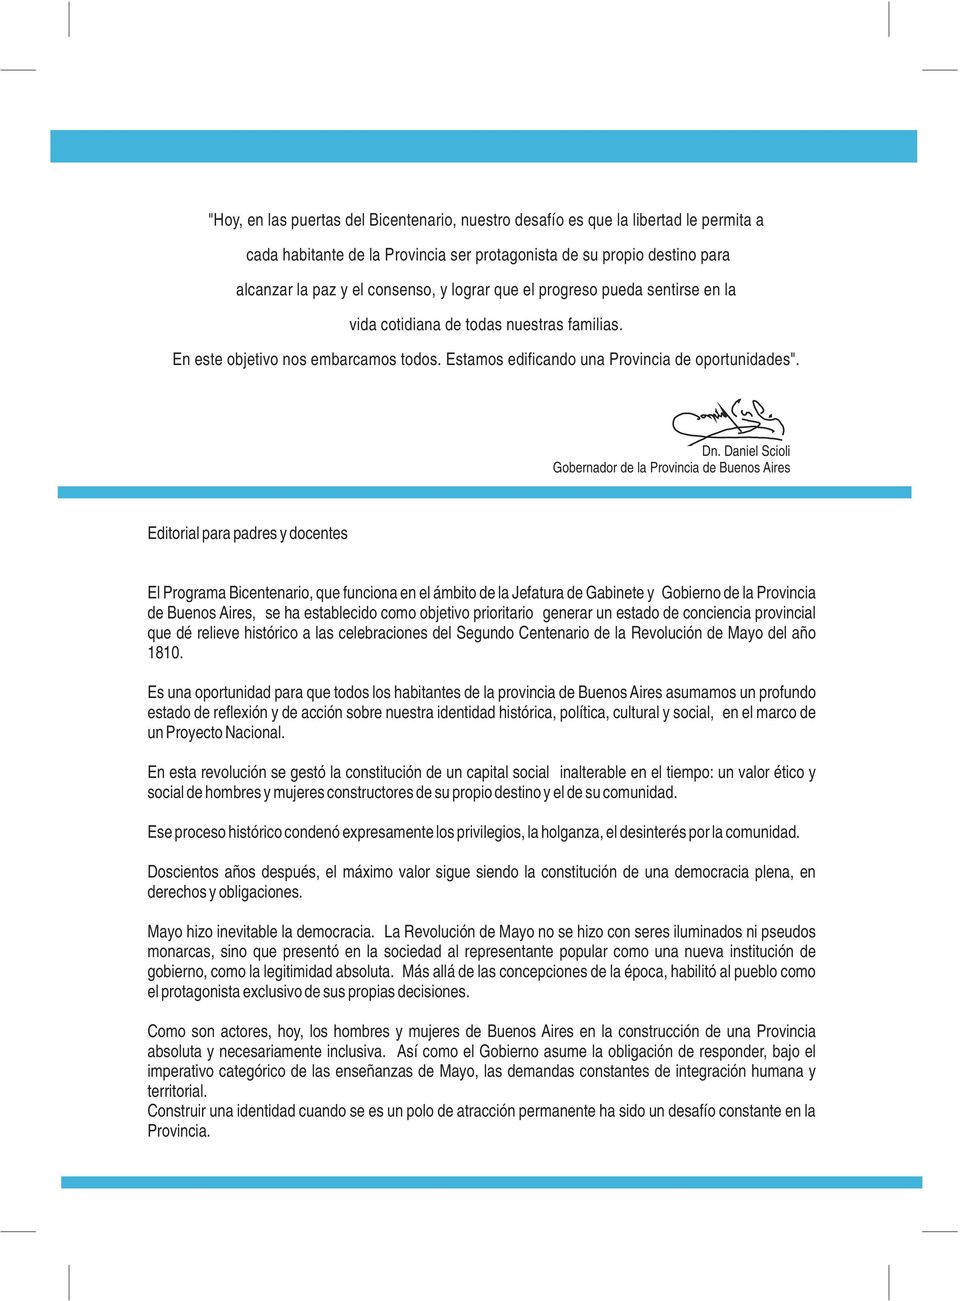 Daniel Scioli Gobernador de la Provincia de Buenos Aires Editorial para padres y docentes El Programa Bicentenario, que funciona en el ámbito de la Jefatura de Gabinete y Gobierno de la Provincia de